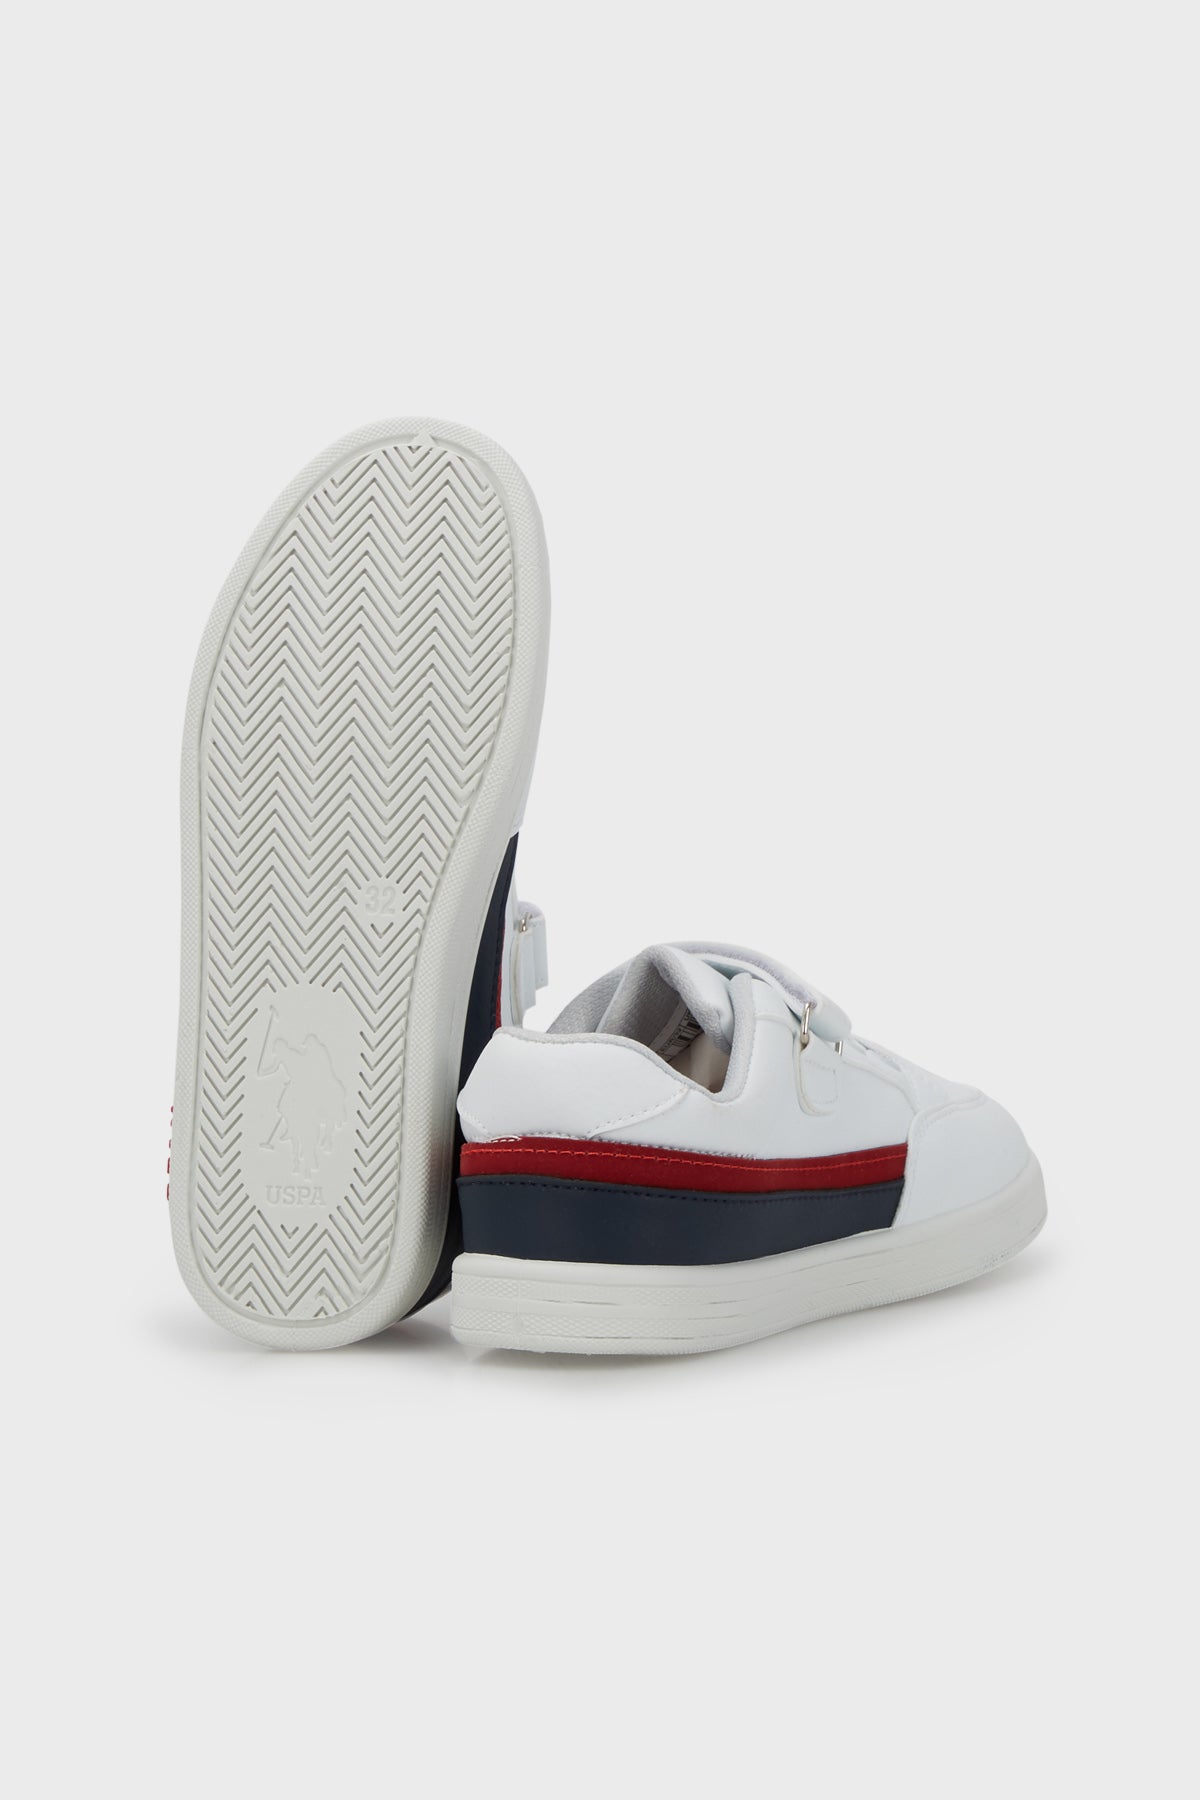 U.S. Polo Assn Cırtlı Sneaker Erkek Çocuk Ayakkabı JAMAL 2PR BEYAZ